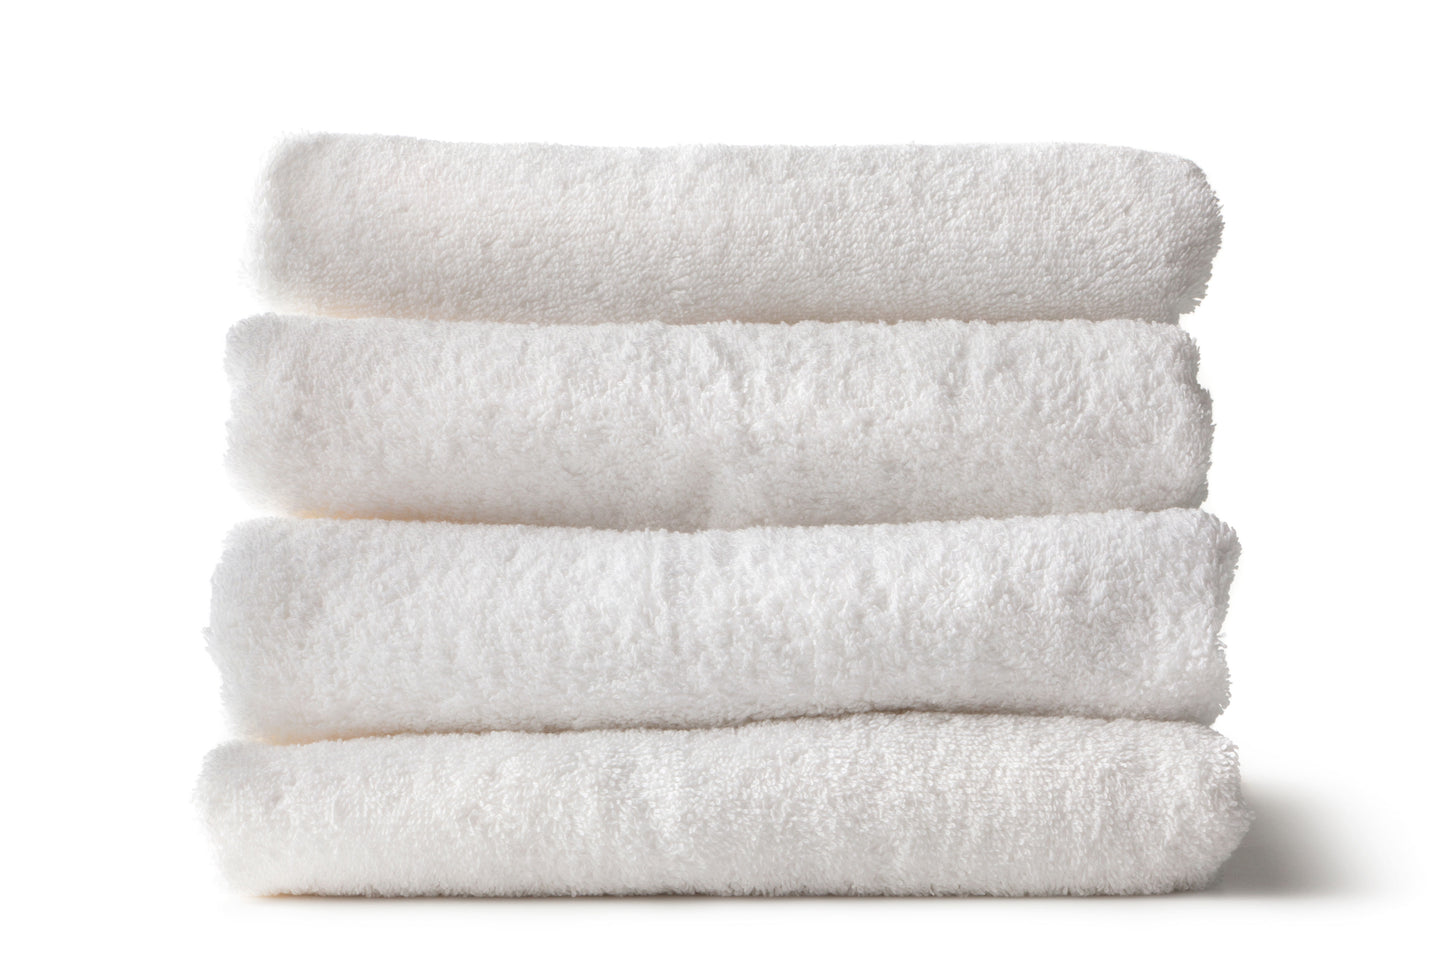 4 serviettes blanches pliées et empilés sur un fond blanc